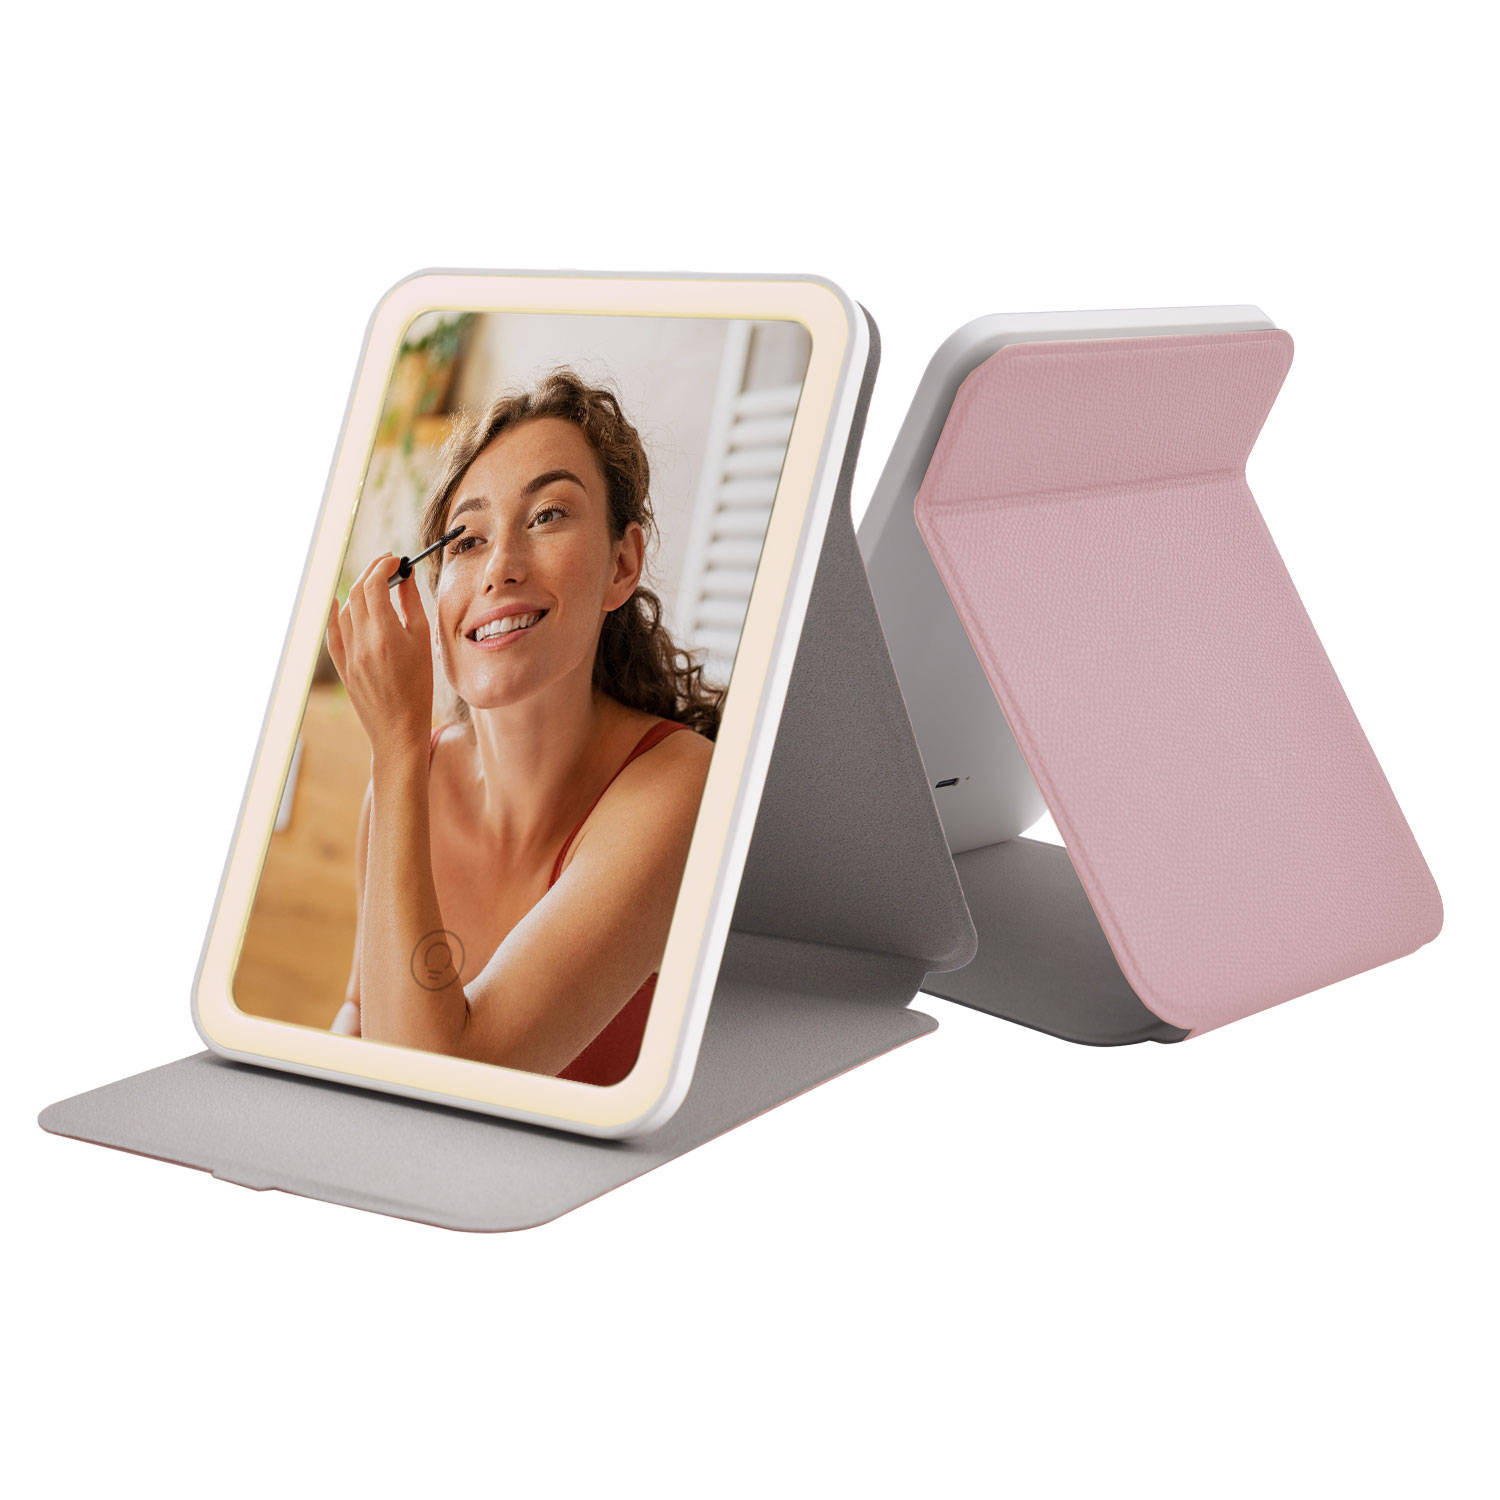 FlinQ Draagbare Make-Up Spiegel Spiegel met verlichting Oplaadbaar Roze